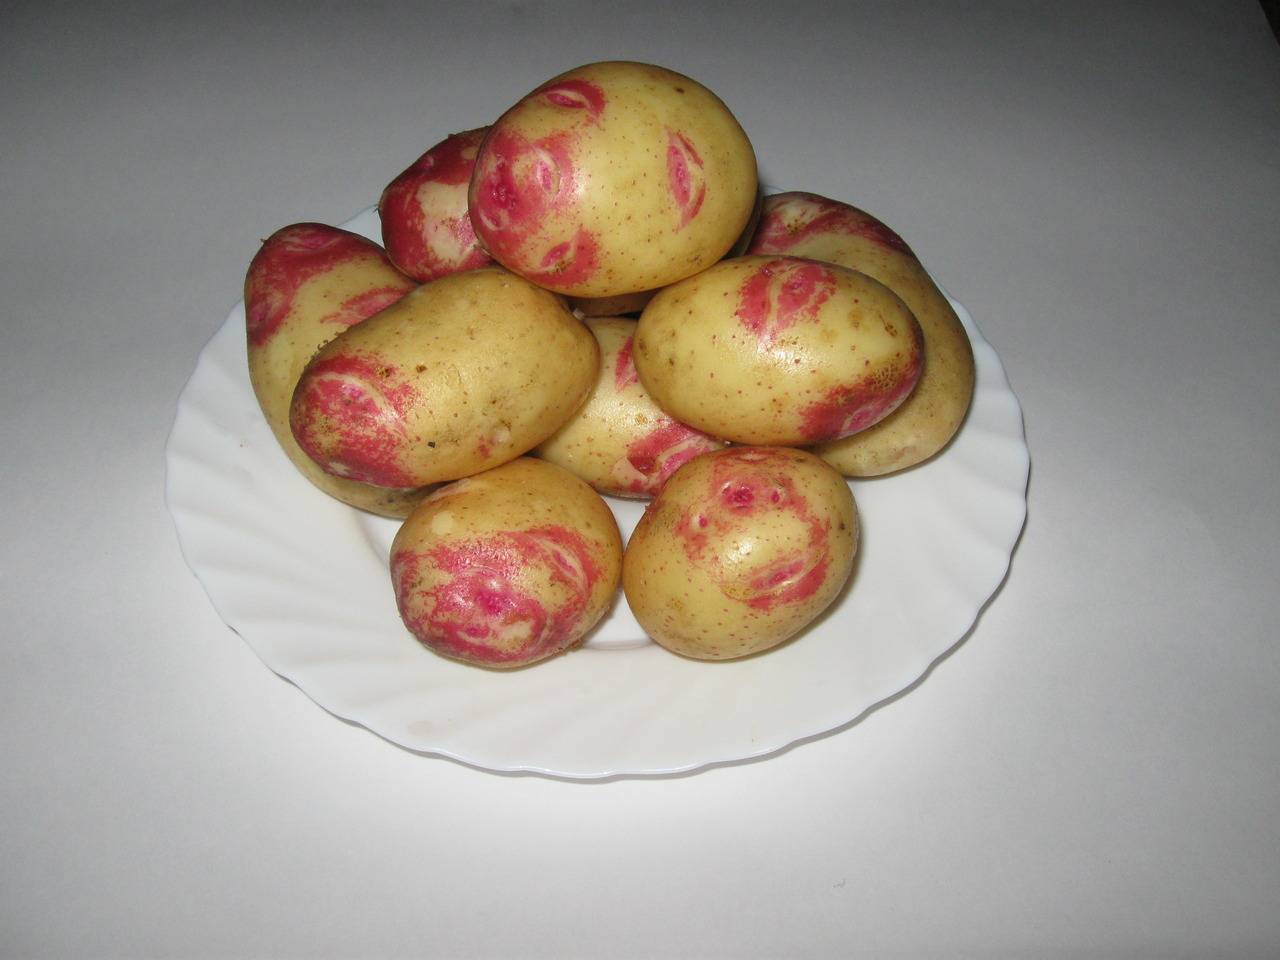 Сорт картофеля иван да марья: как выглядит на фото, а также описание и характеристика картошки, основные особенности, преимущества, недостатки и правила выращивания